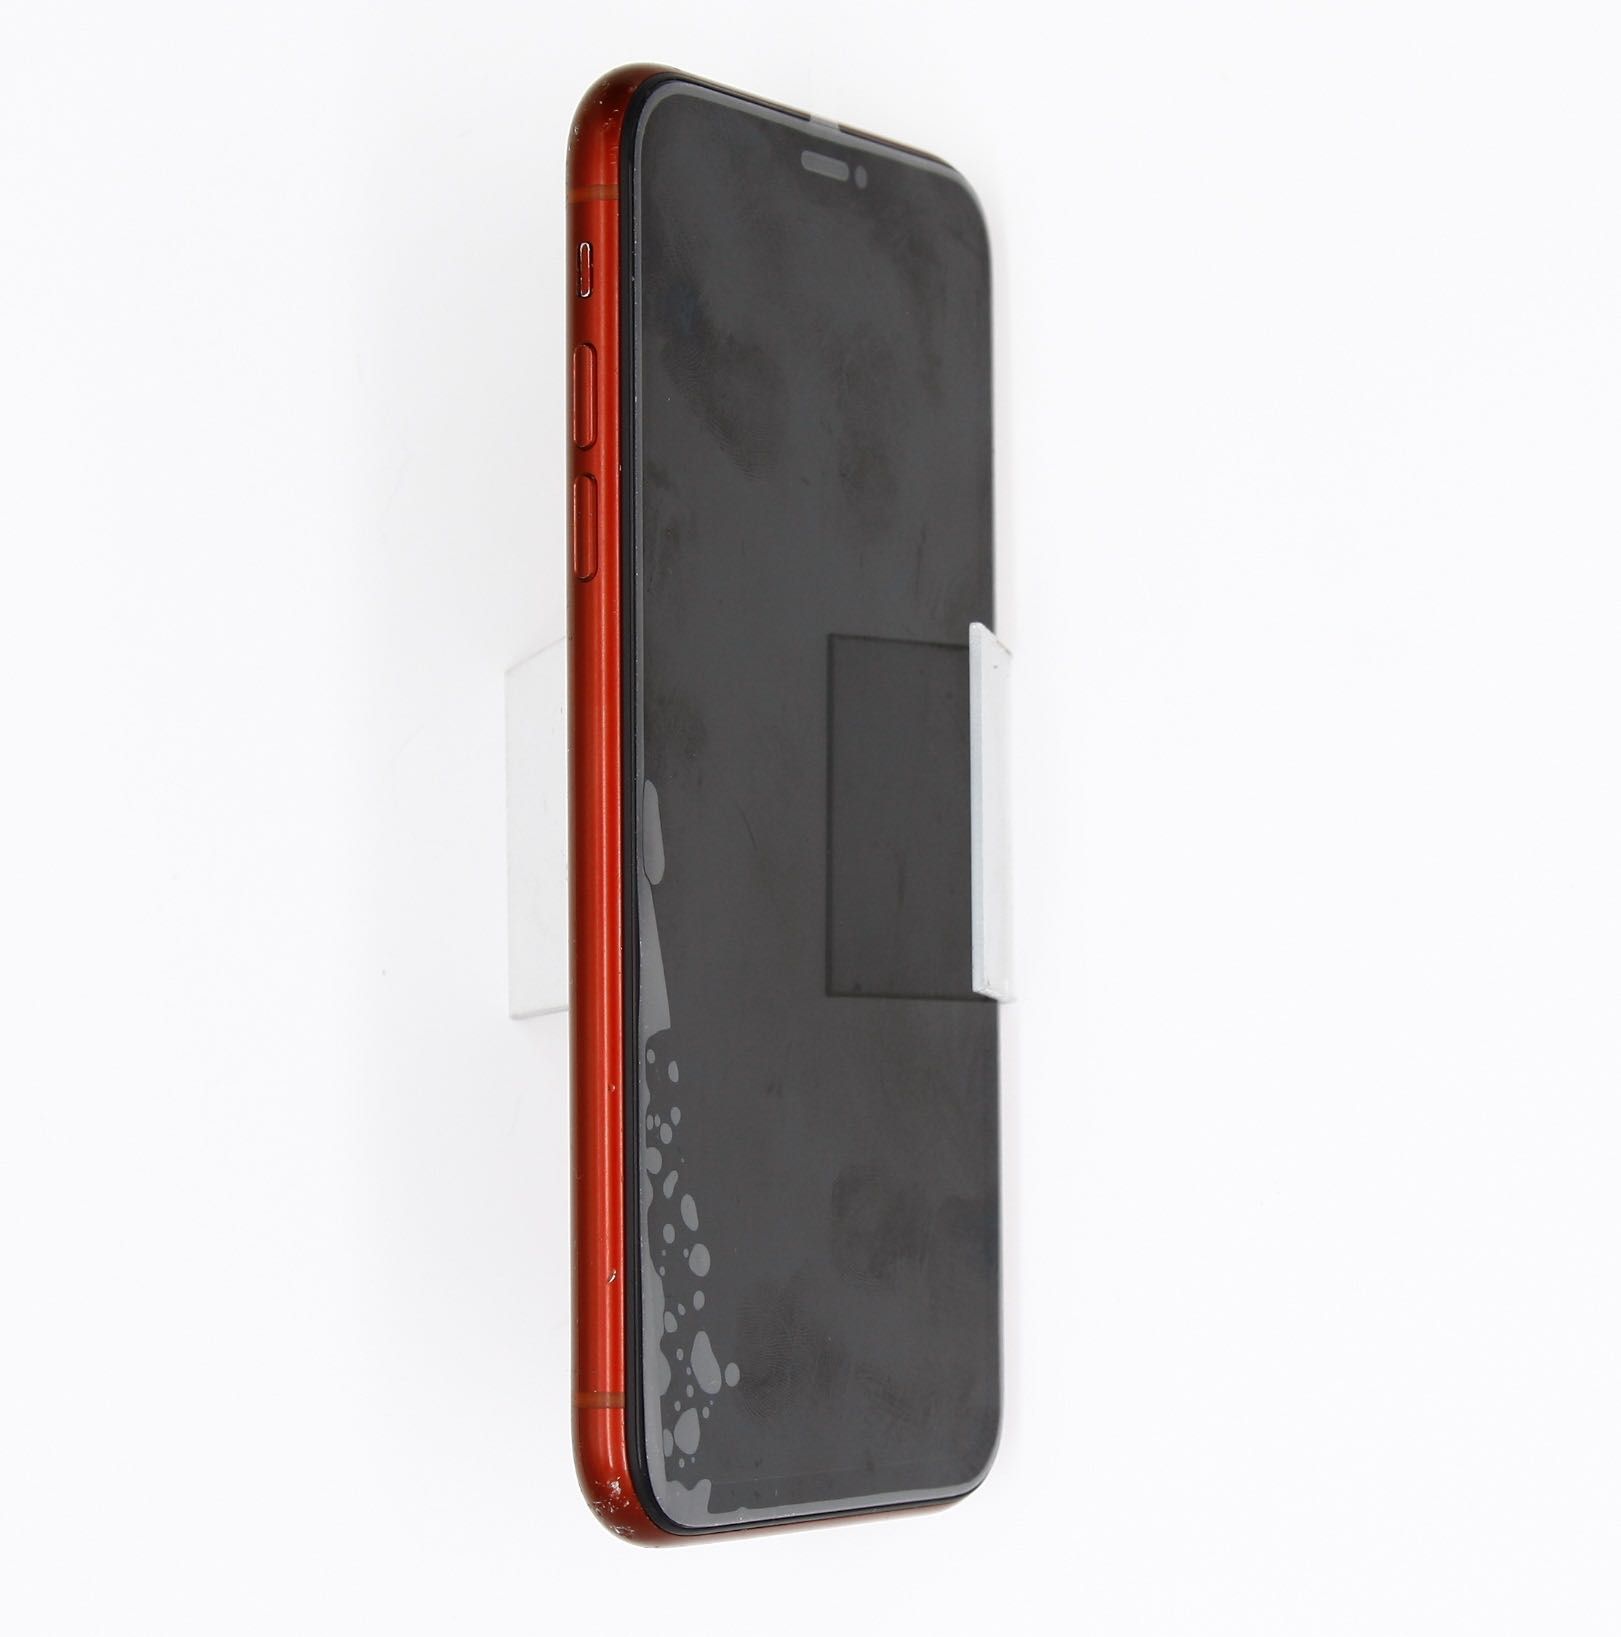 Продам б/у айфон XR 64 ГБ, Iphone XR 64 GB б/у, A1984, RED color.